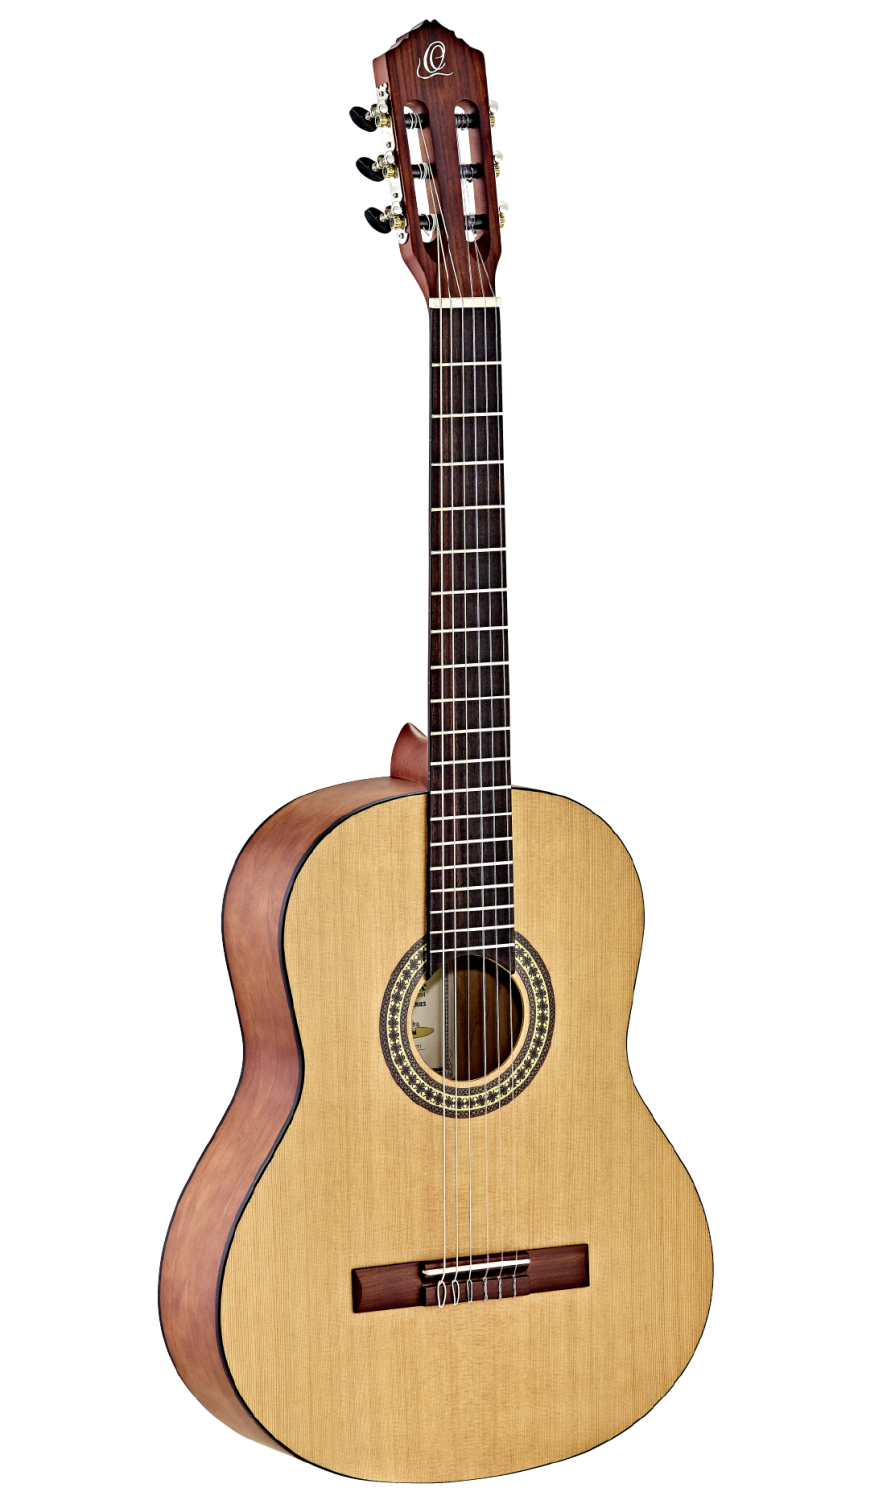 Ortega RSTC5M - Gitara klasyczna